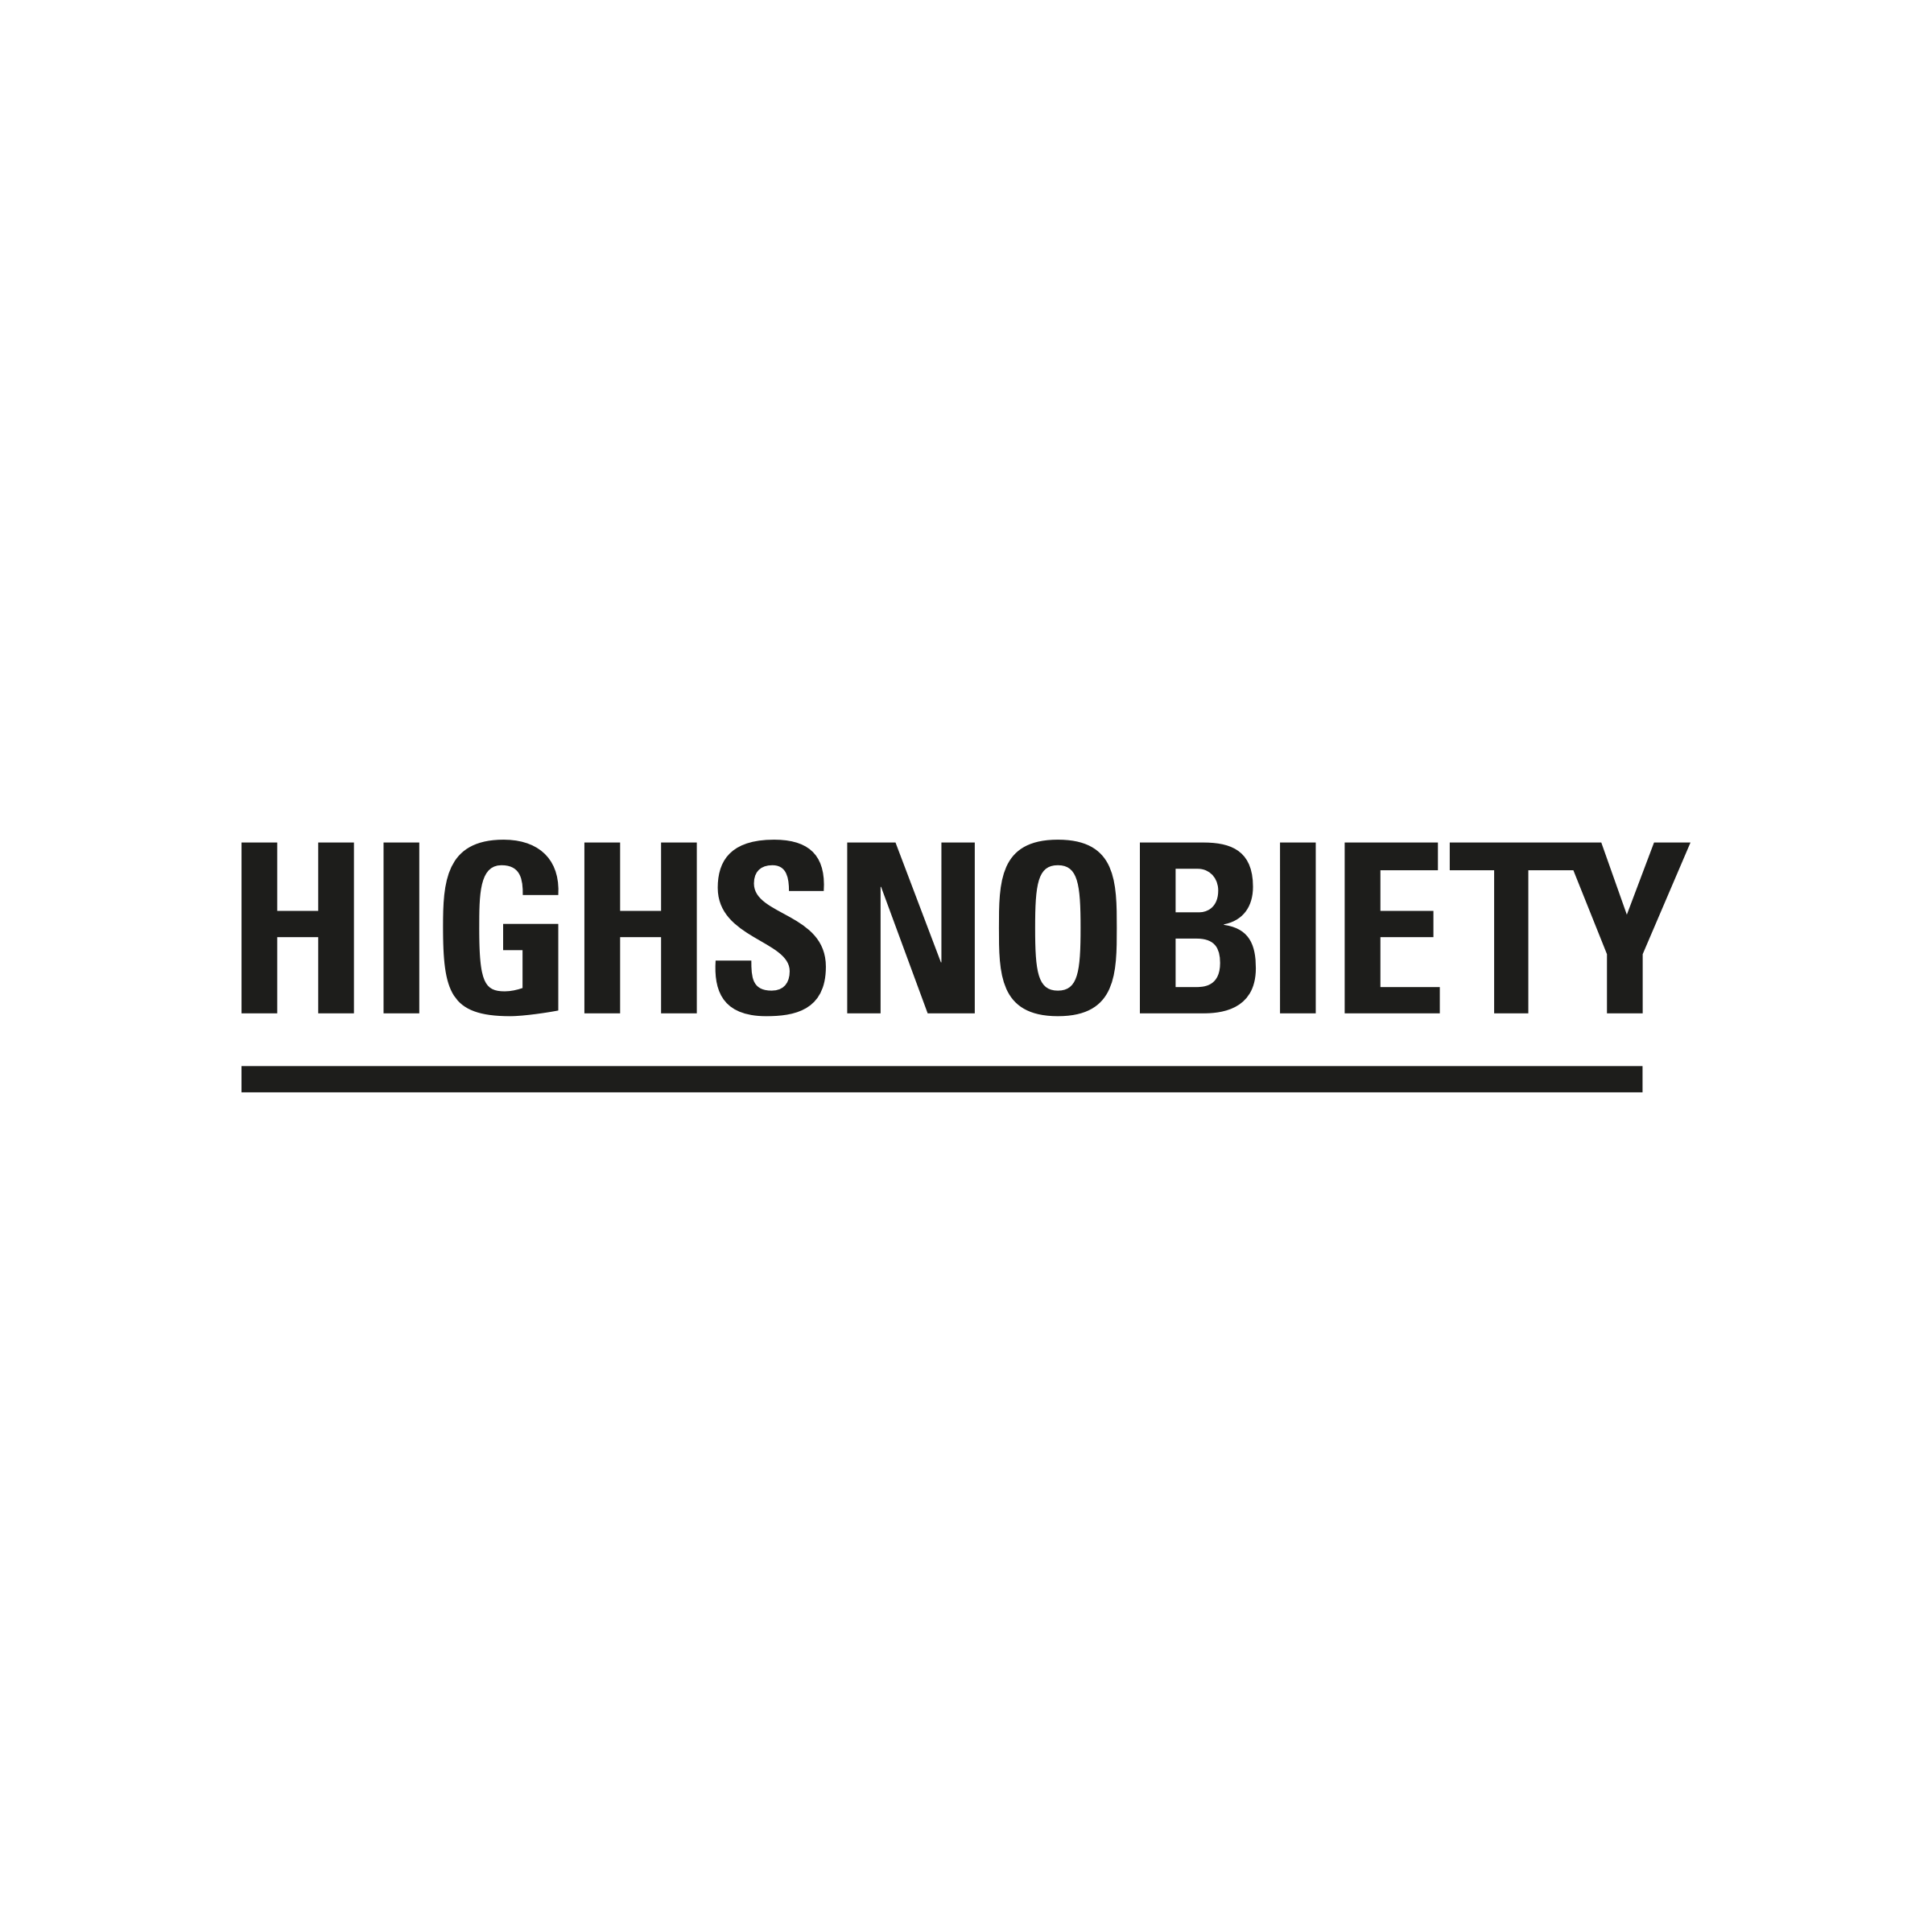 (c) Highsnobiety.com